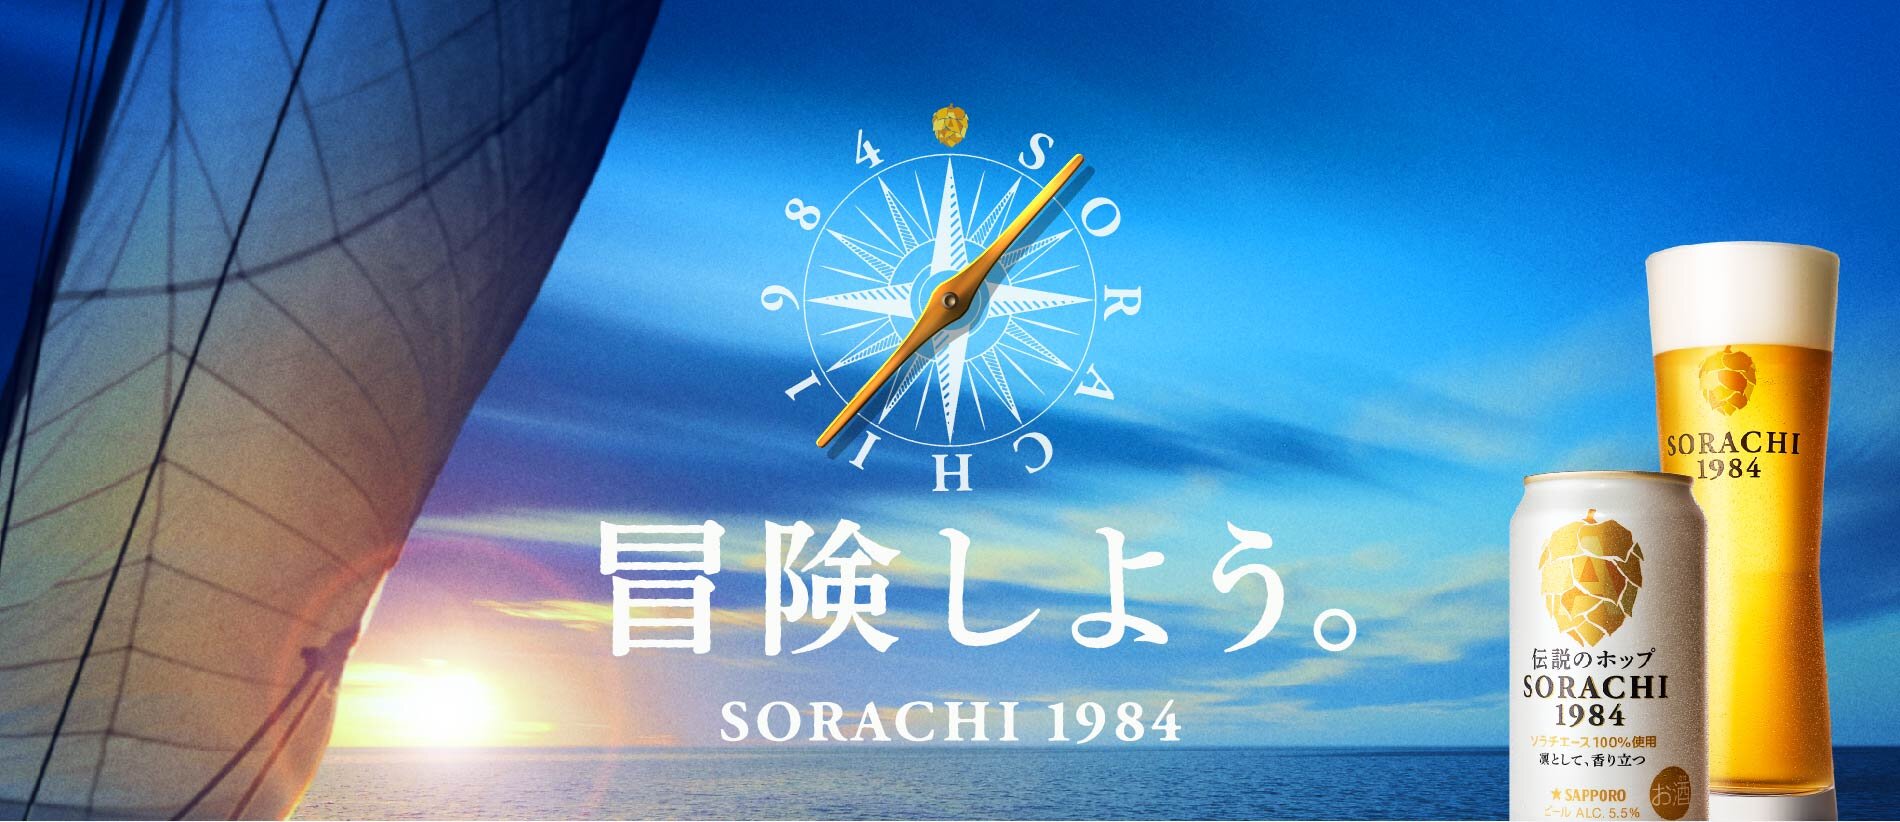 冒険しよう SORACHI 1984